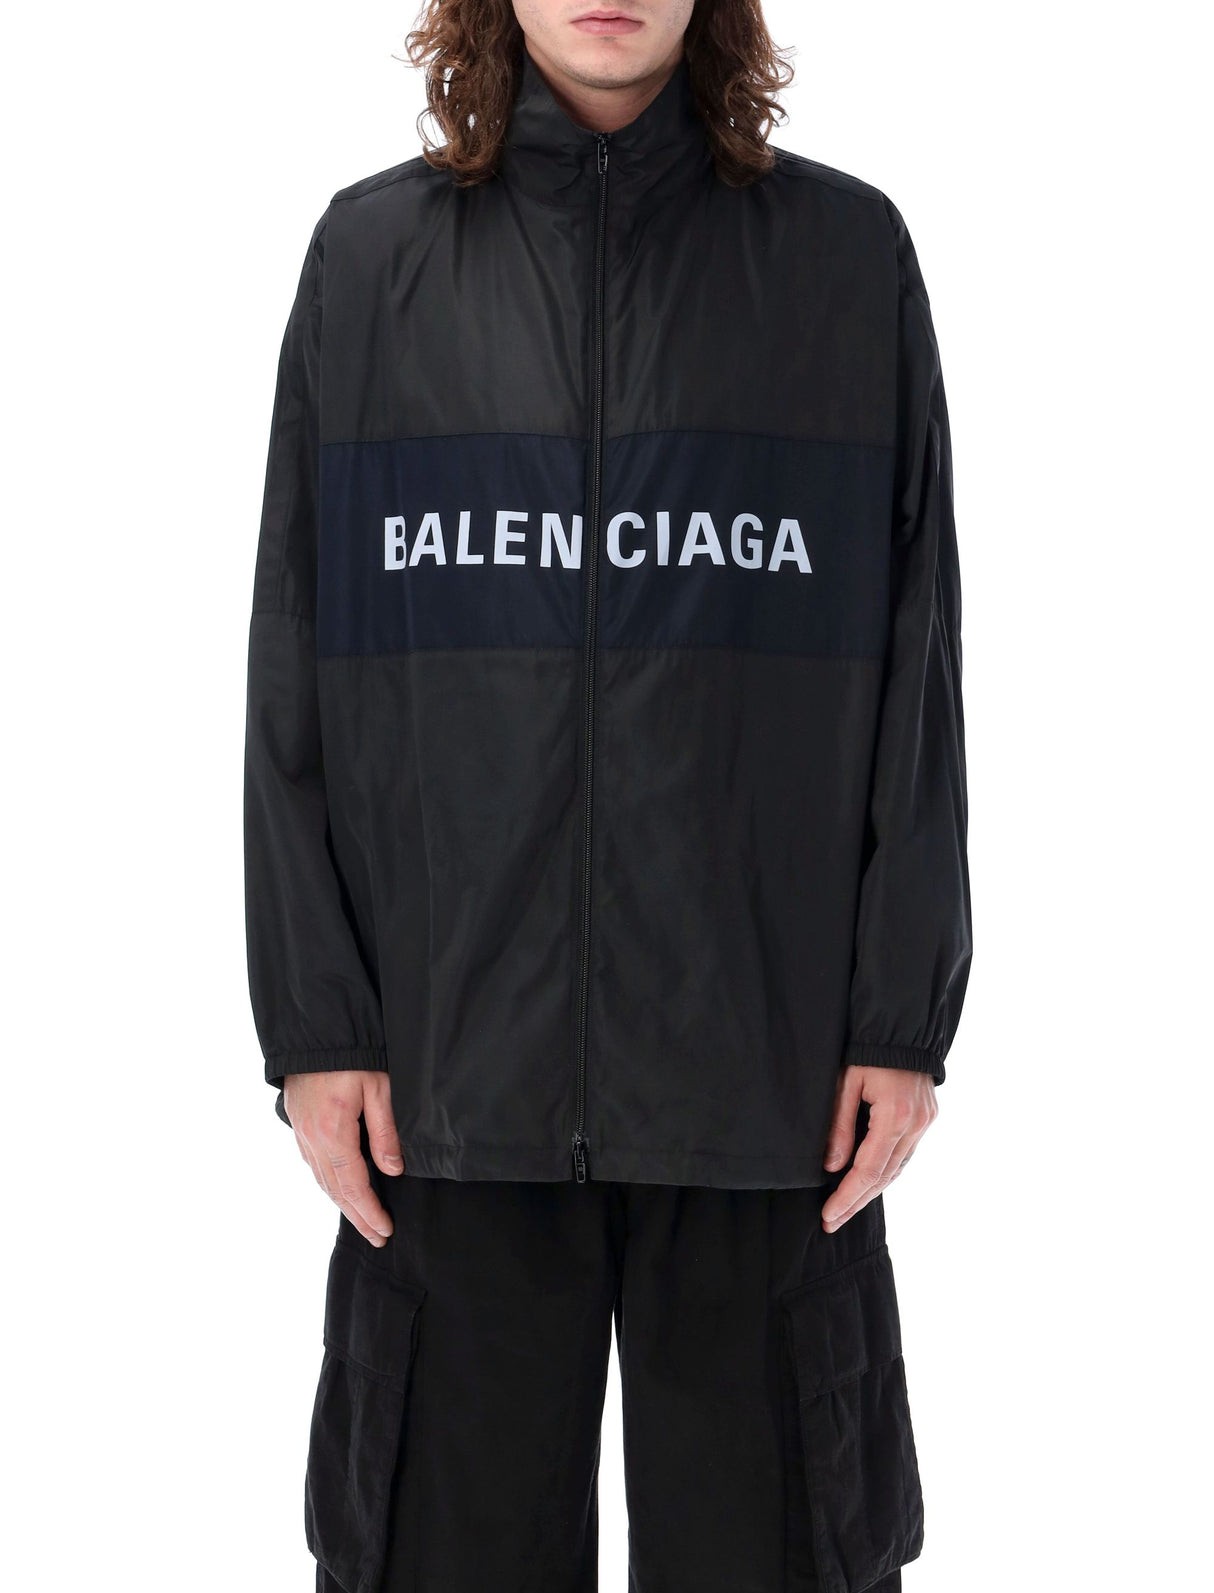 Áo khoác cổ cao kéo thành phong cách cho phụ nữ của Balenciaga